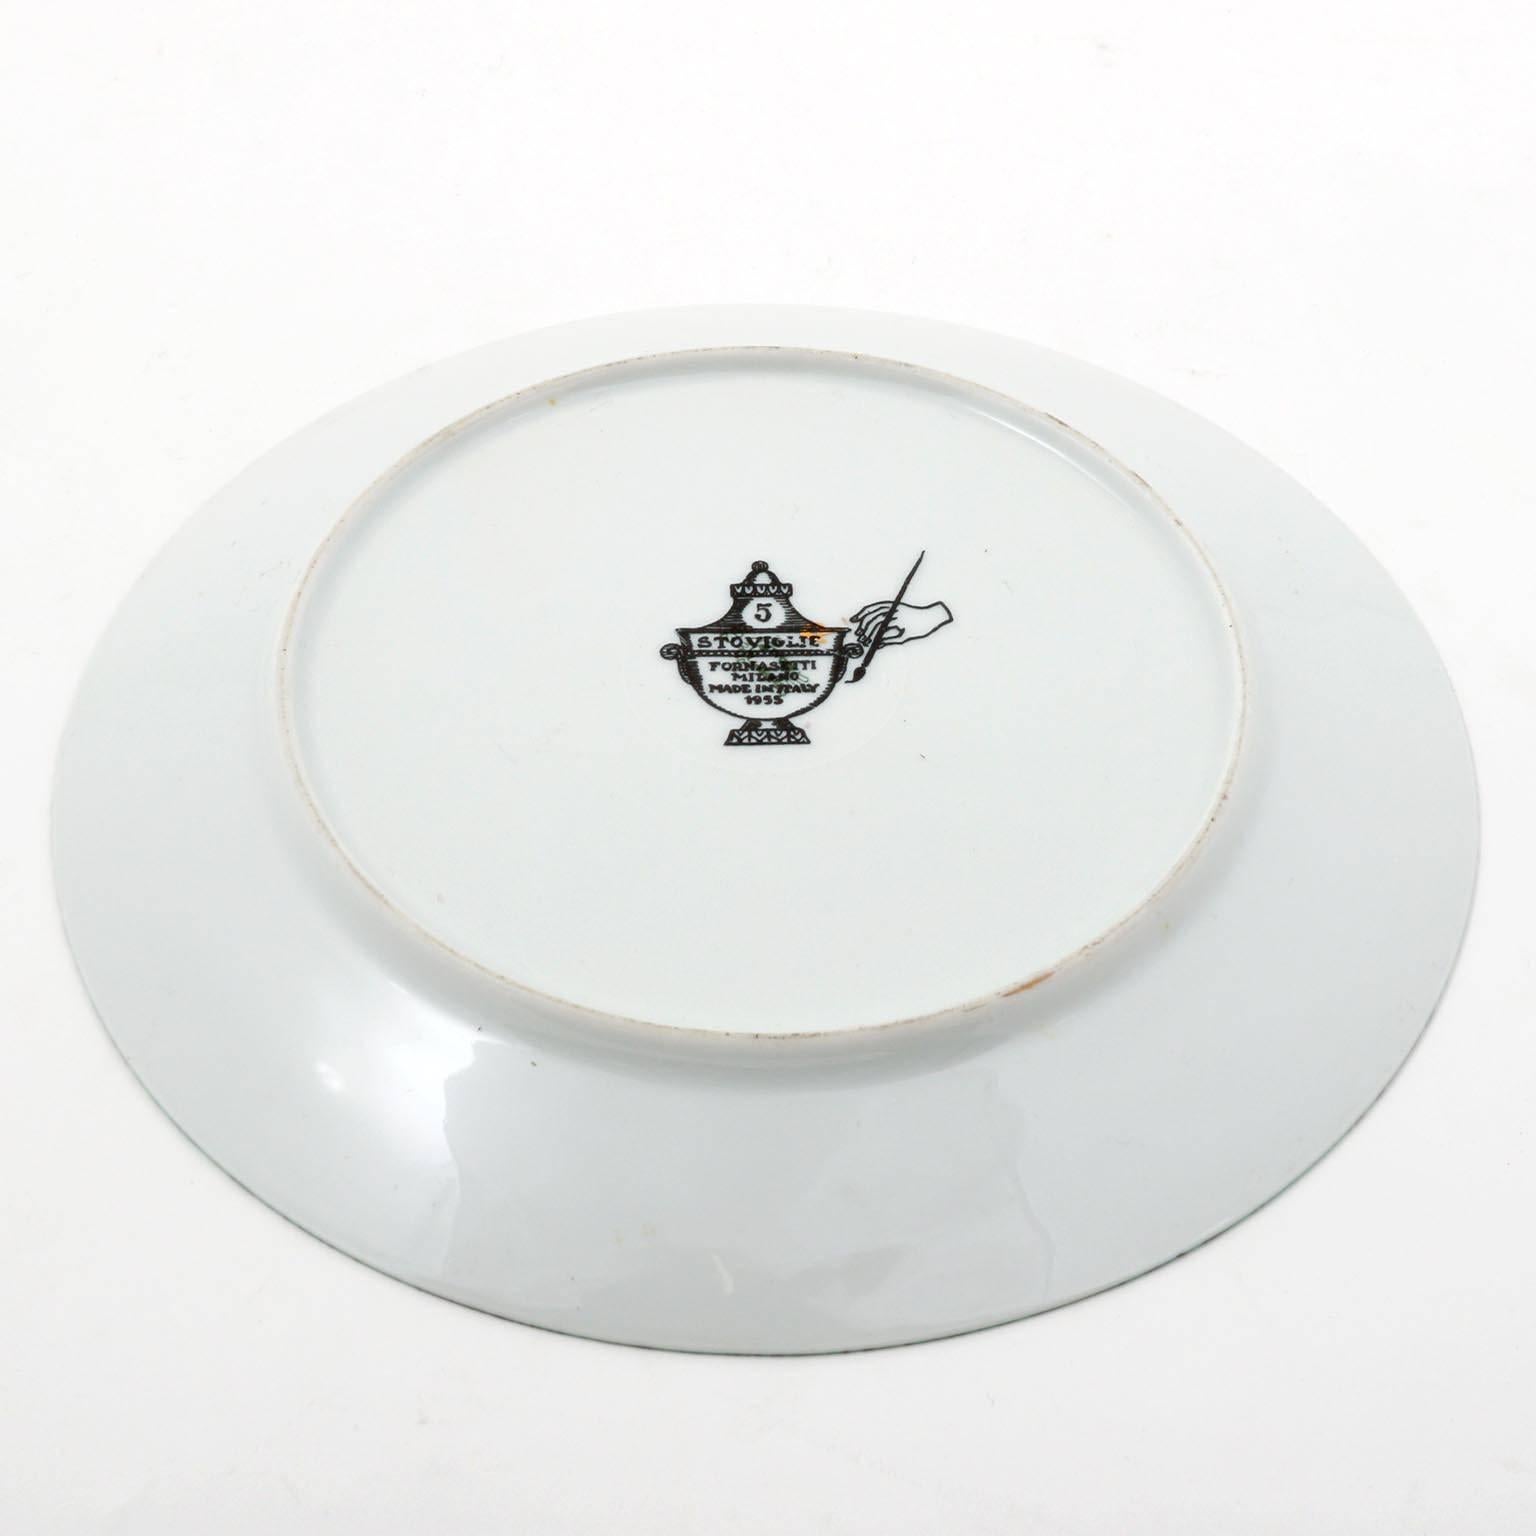 Italian Piero Fornasetti Malachite Ceramic Plate Stoviglie No. 5, Milano, Italy, 1955